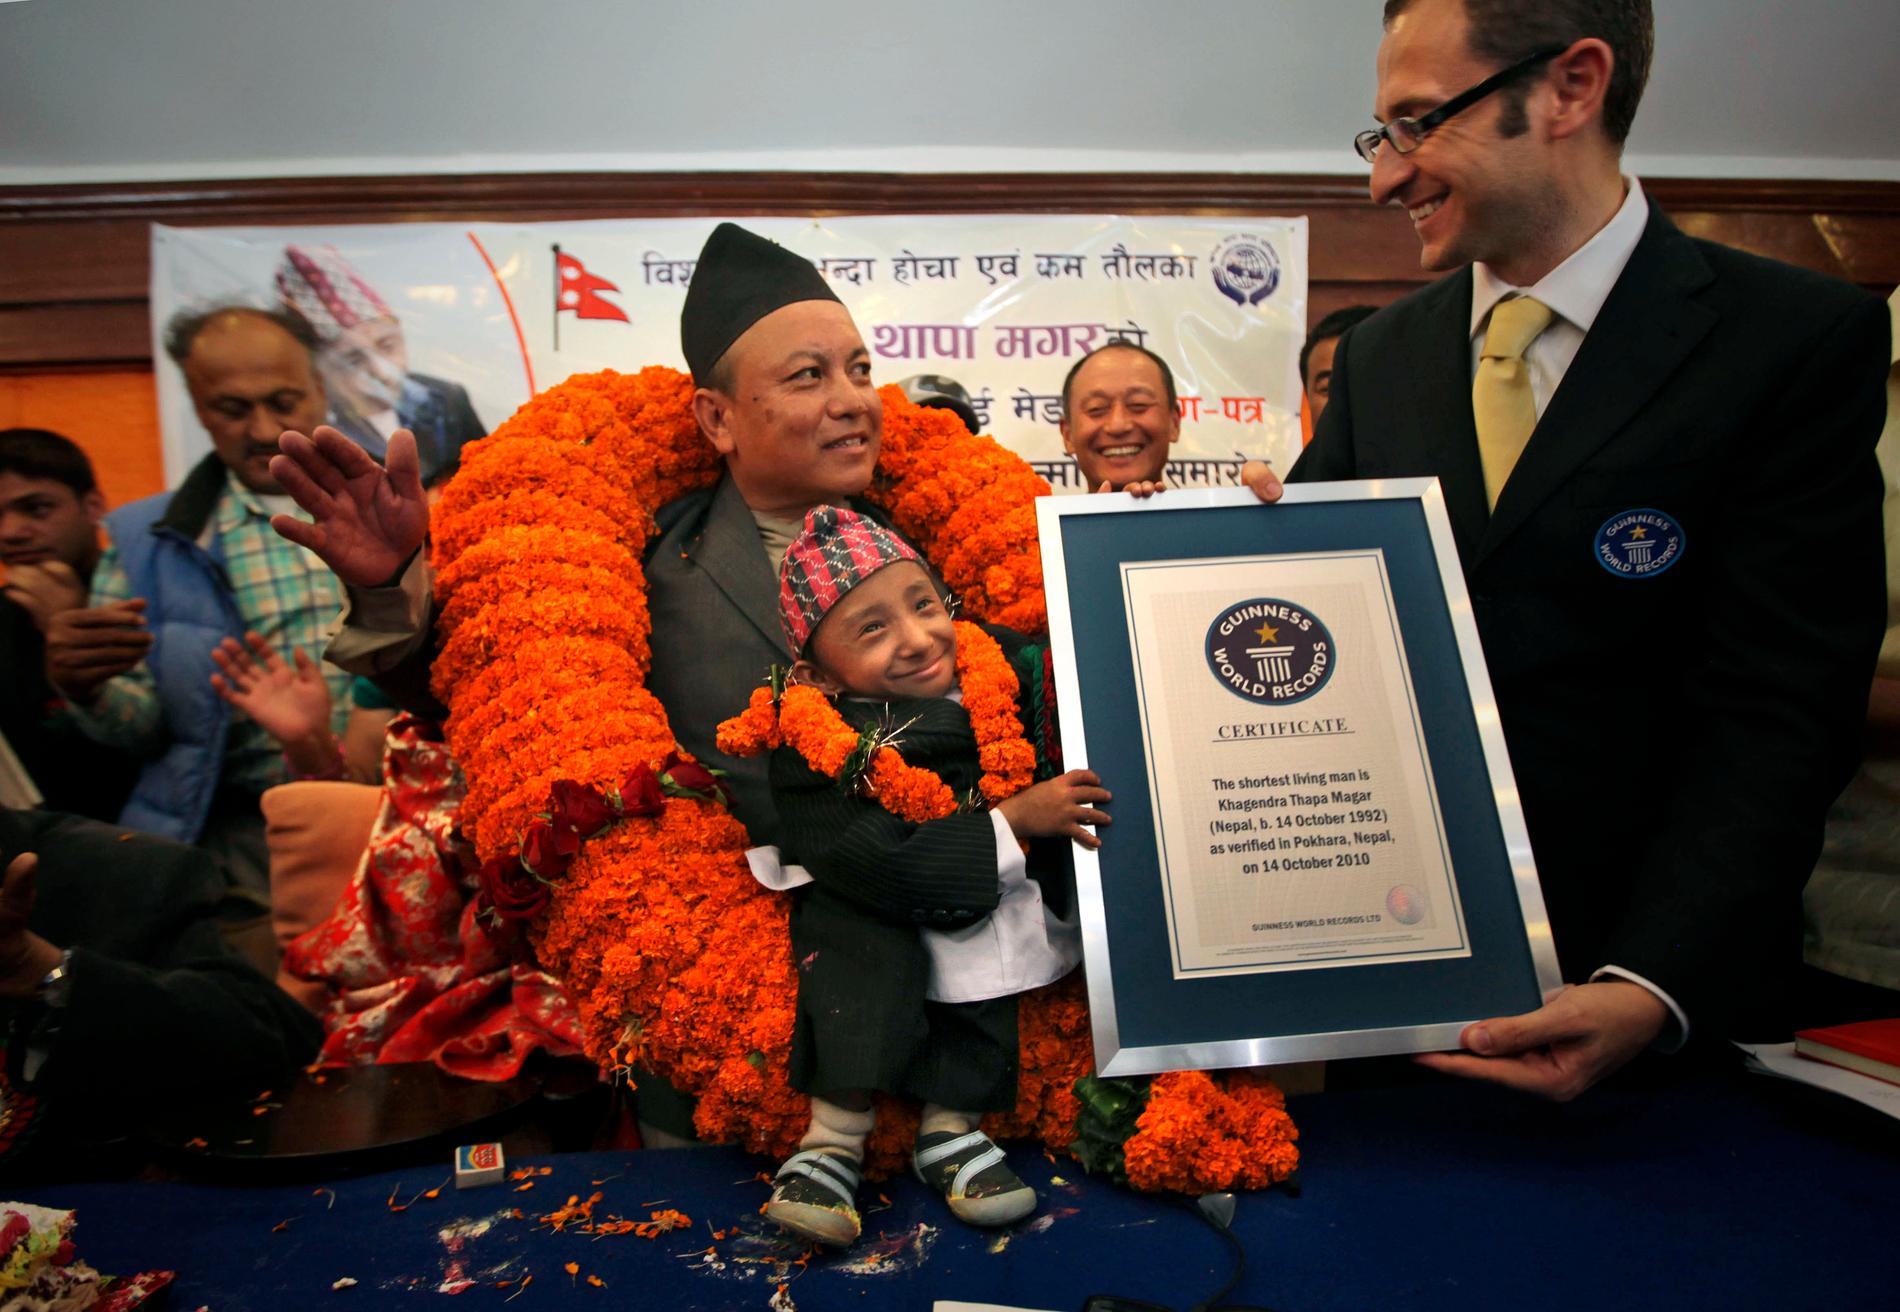 Khagendra utnämndes till världens kortaste man av Guinness World Records på sin 18-årsdag.